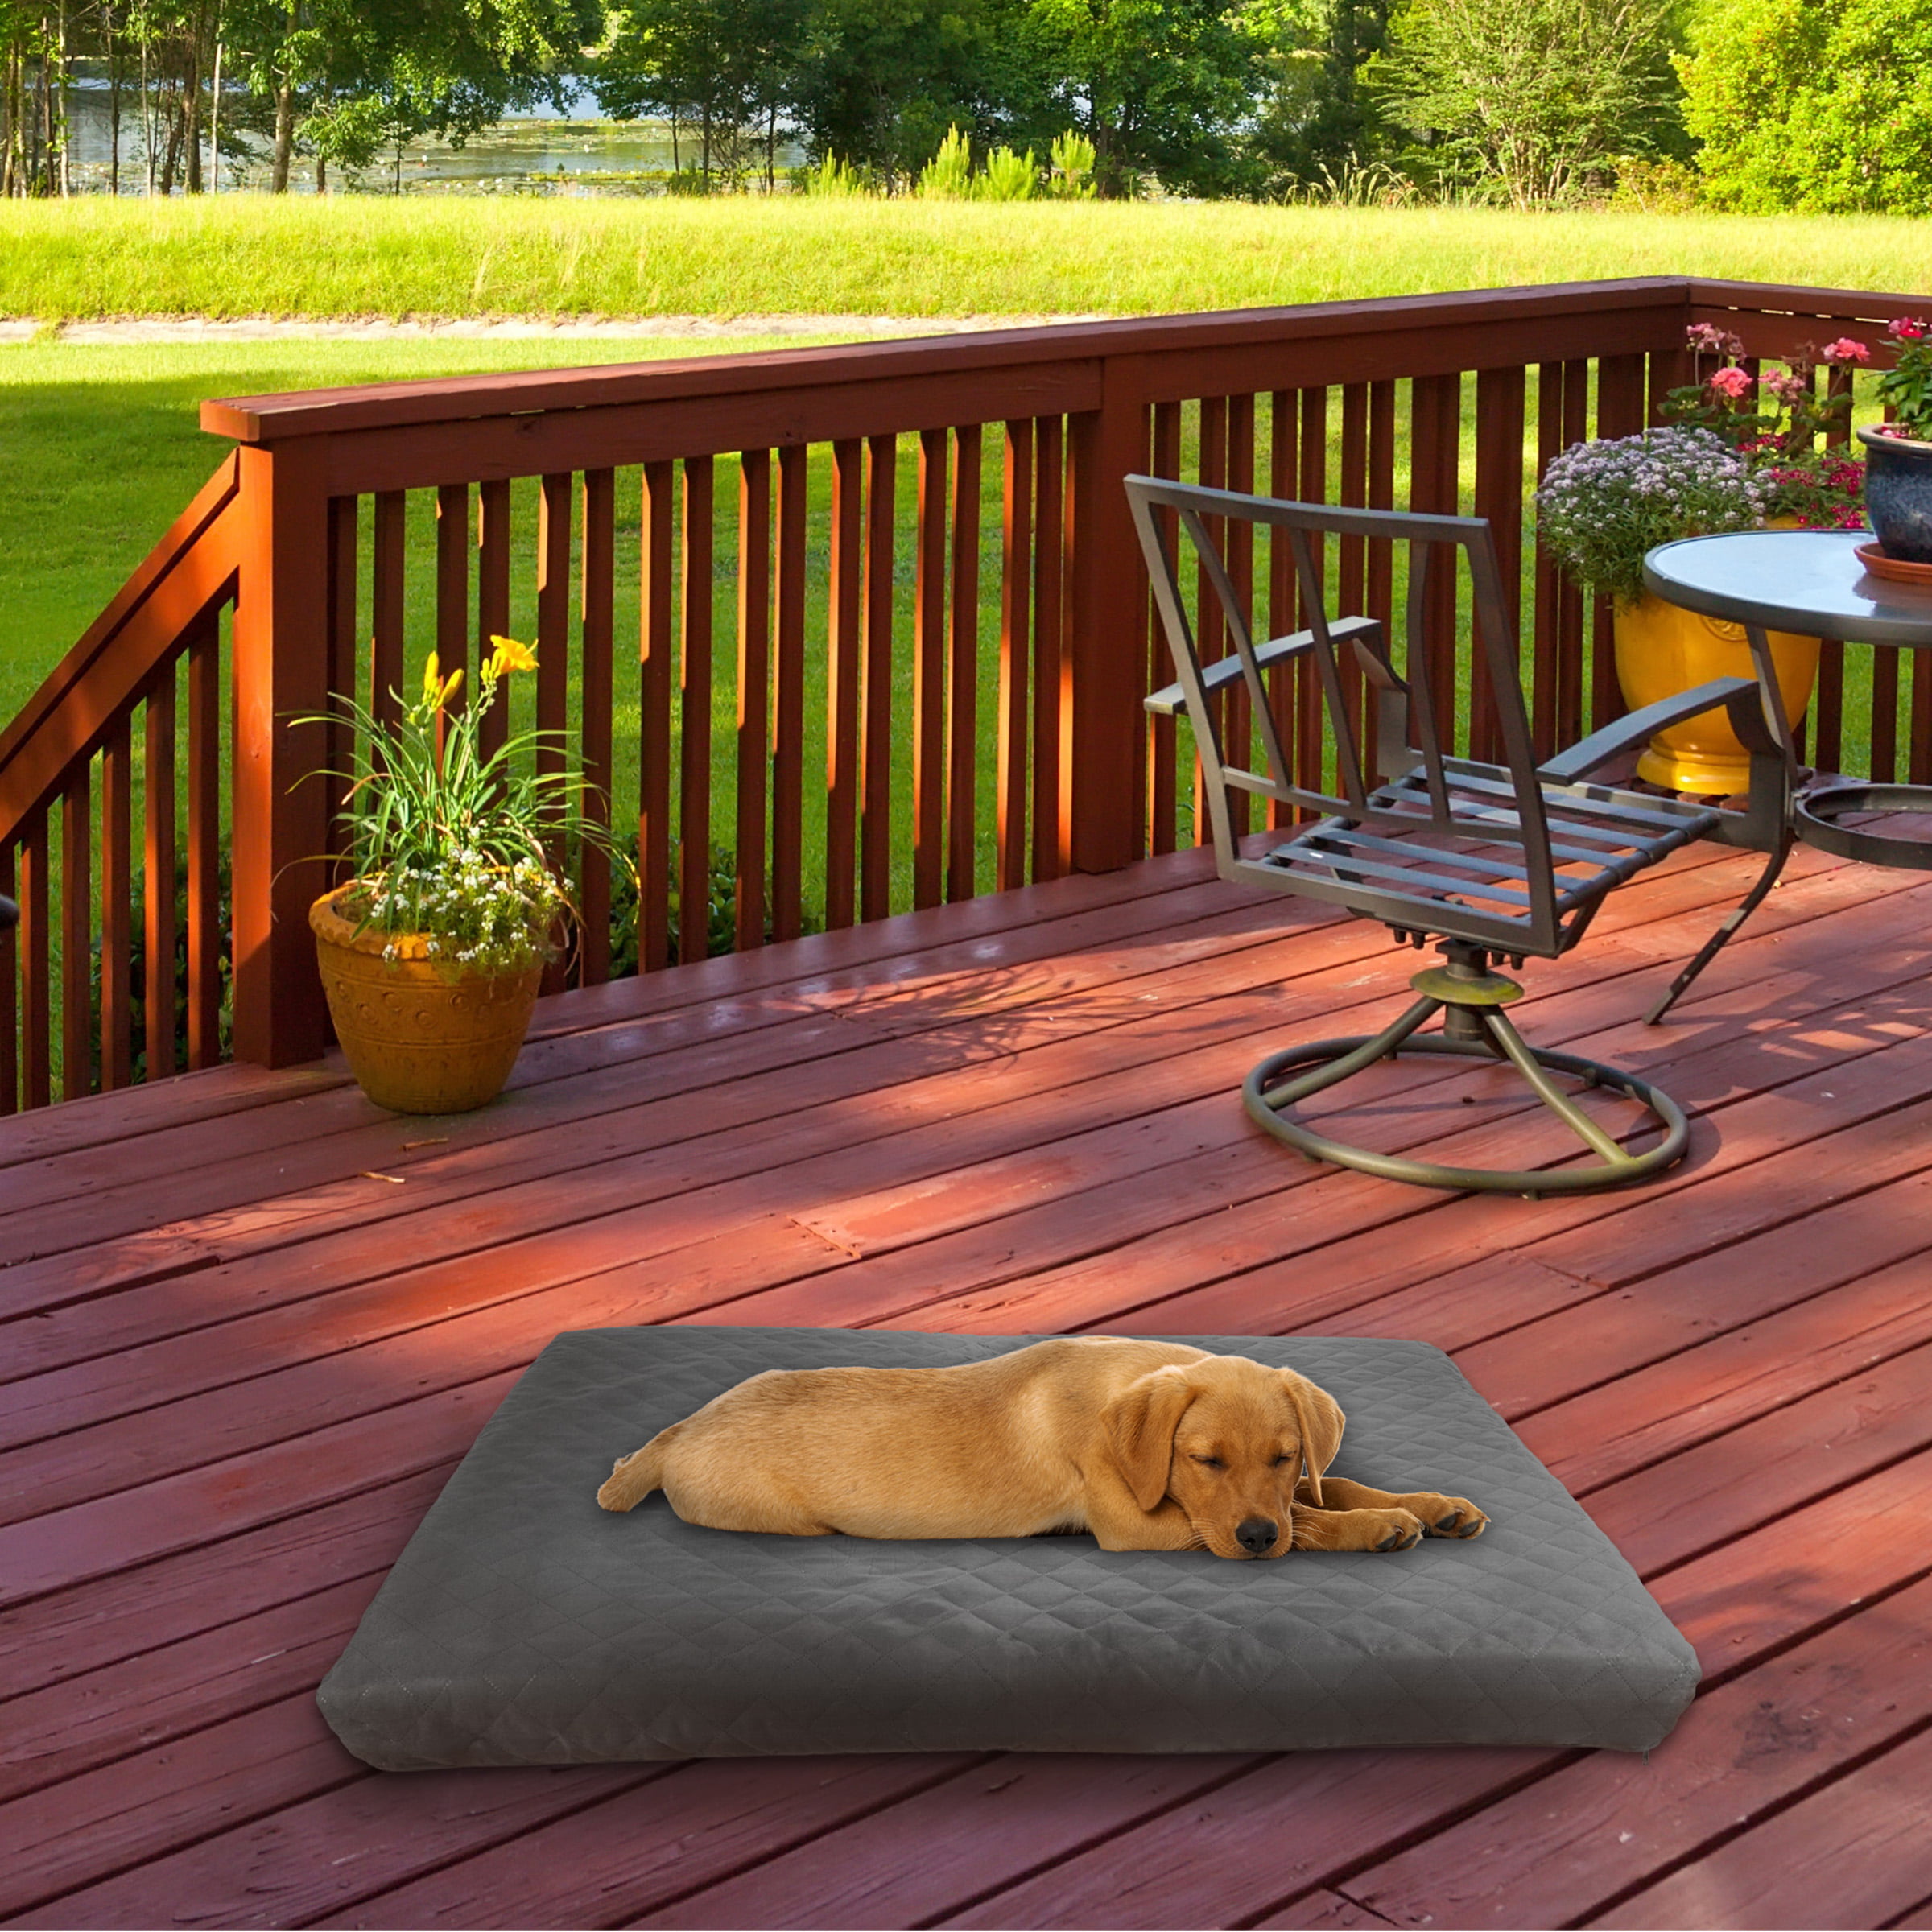 PETMAKER Waterproof Memory Foam Pet Bed- Indoor/Outdoor Dog Bed with